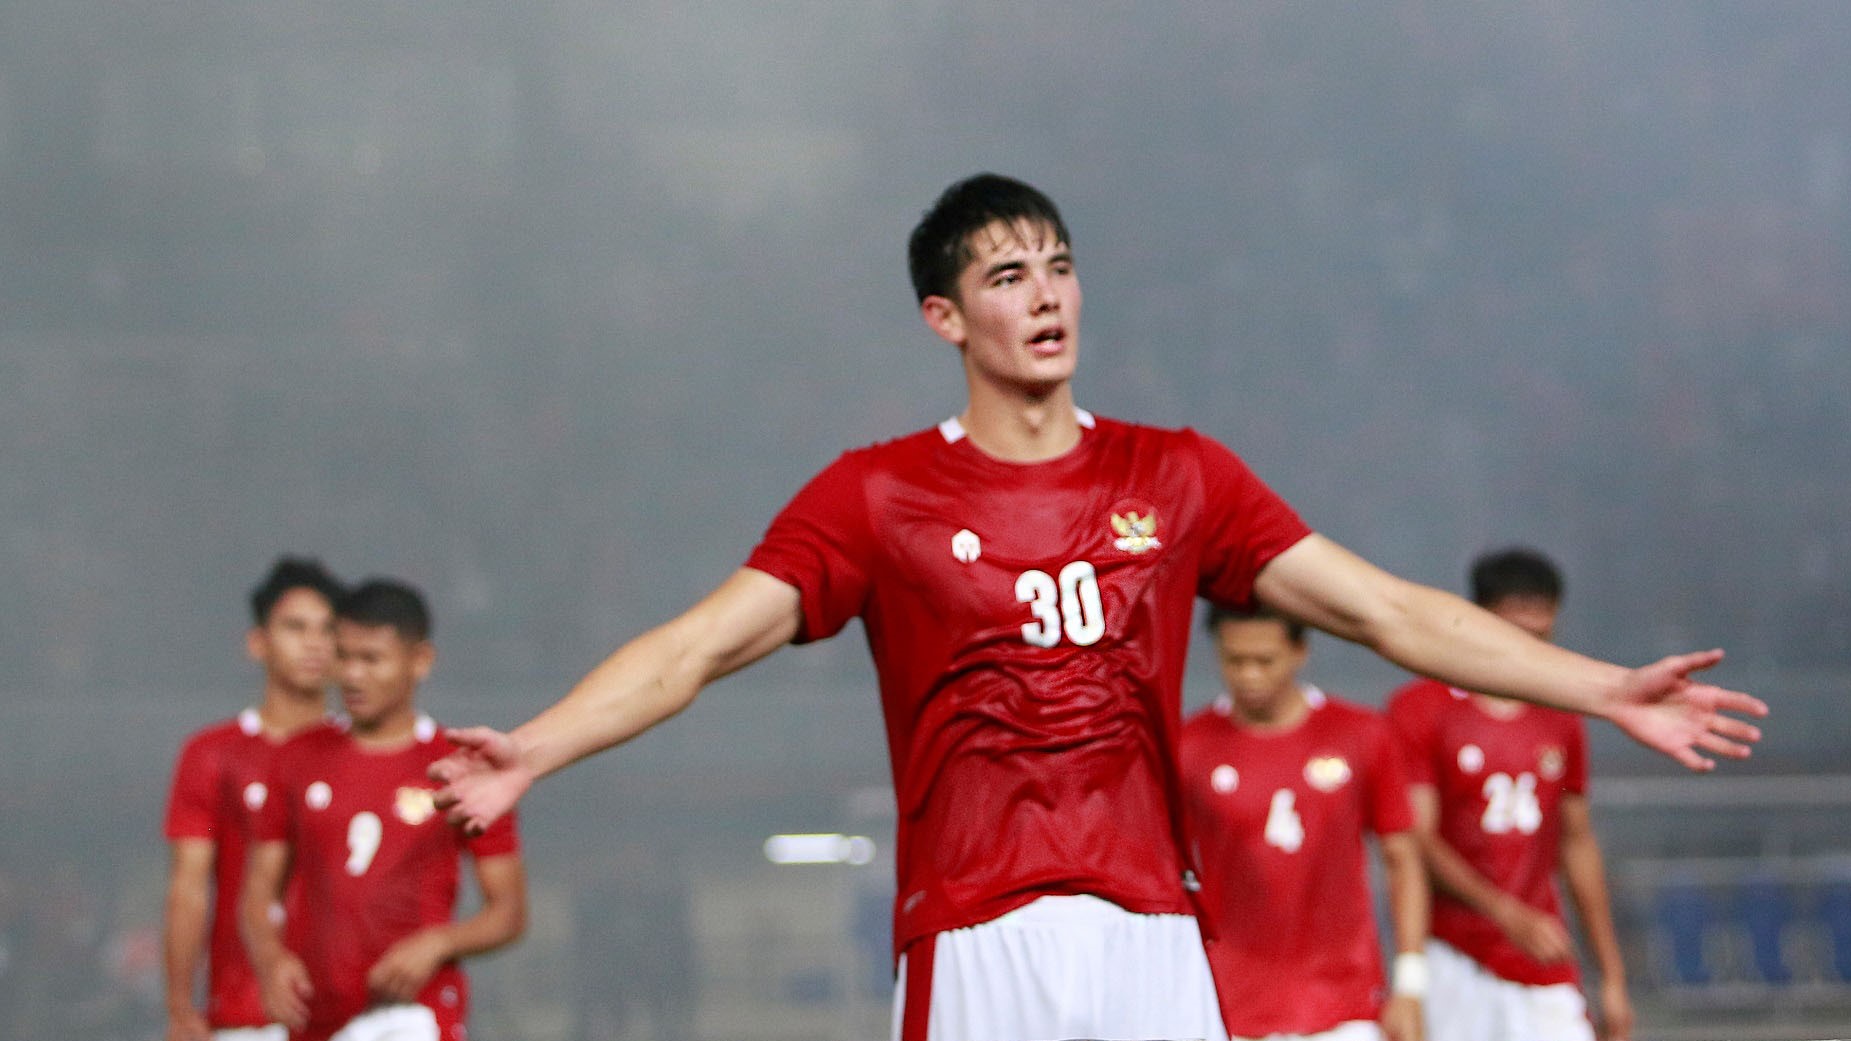 Gawat!! Elkan Baggott Tak Bisa Memperkuat Timnas Indonesia Di Ajang Piala AFF 2022